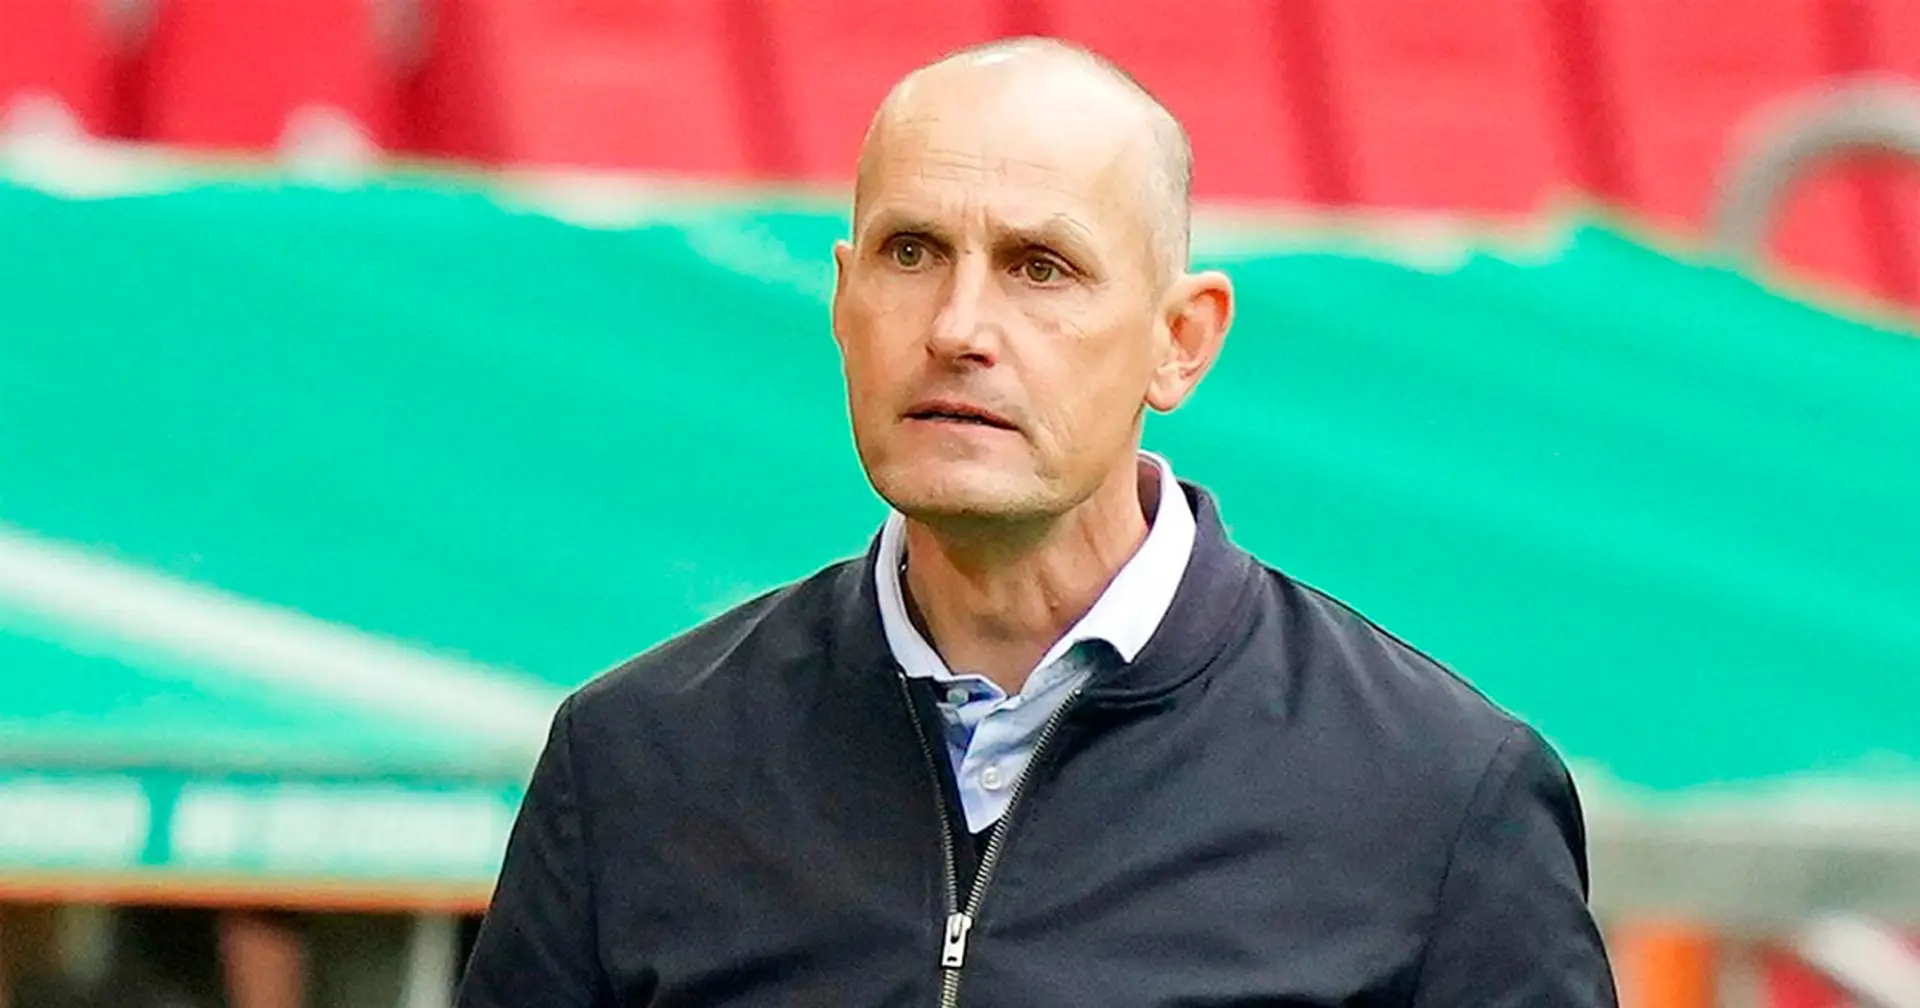 Augsburg-Trainer Herrlich über Plan vs. Bayern: "Wir werden uns mit allem wehren, was wir haben"